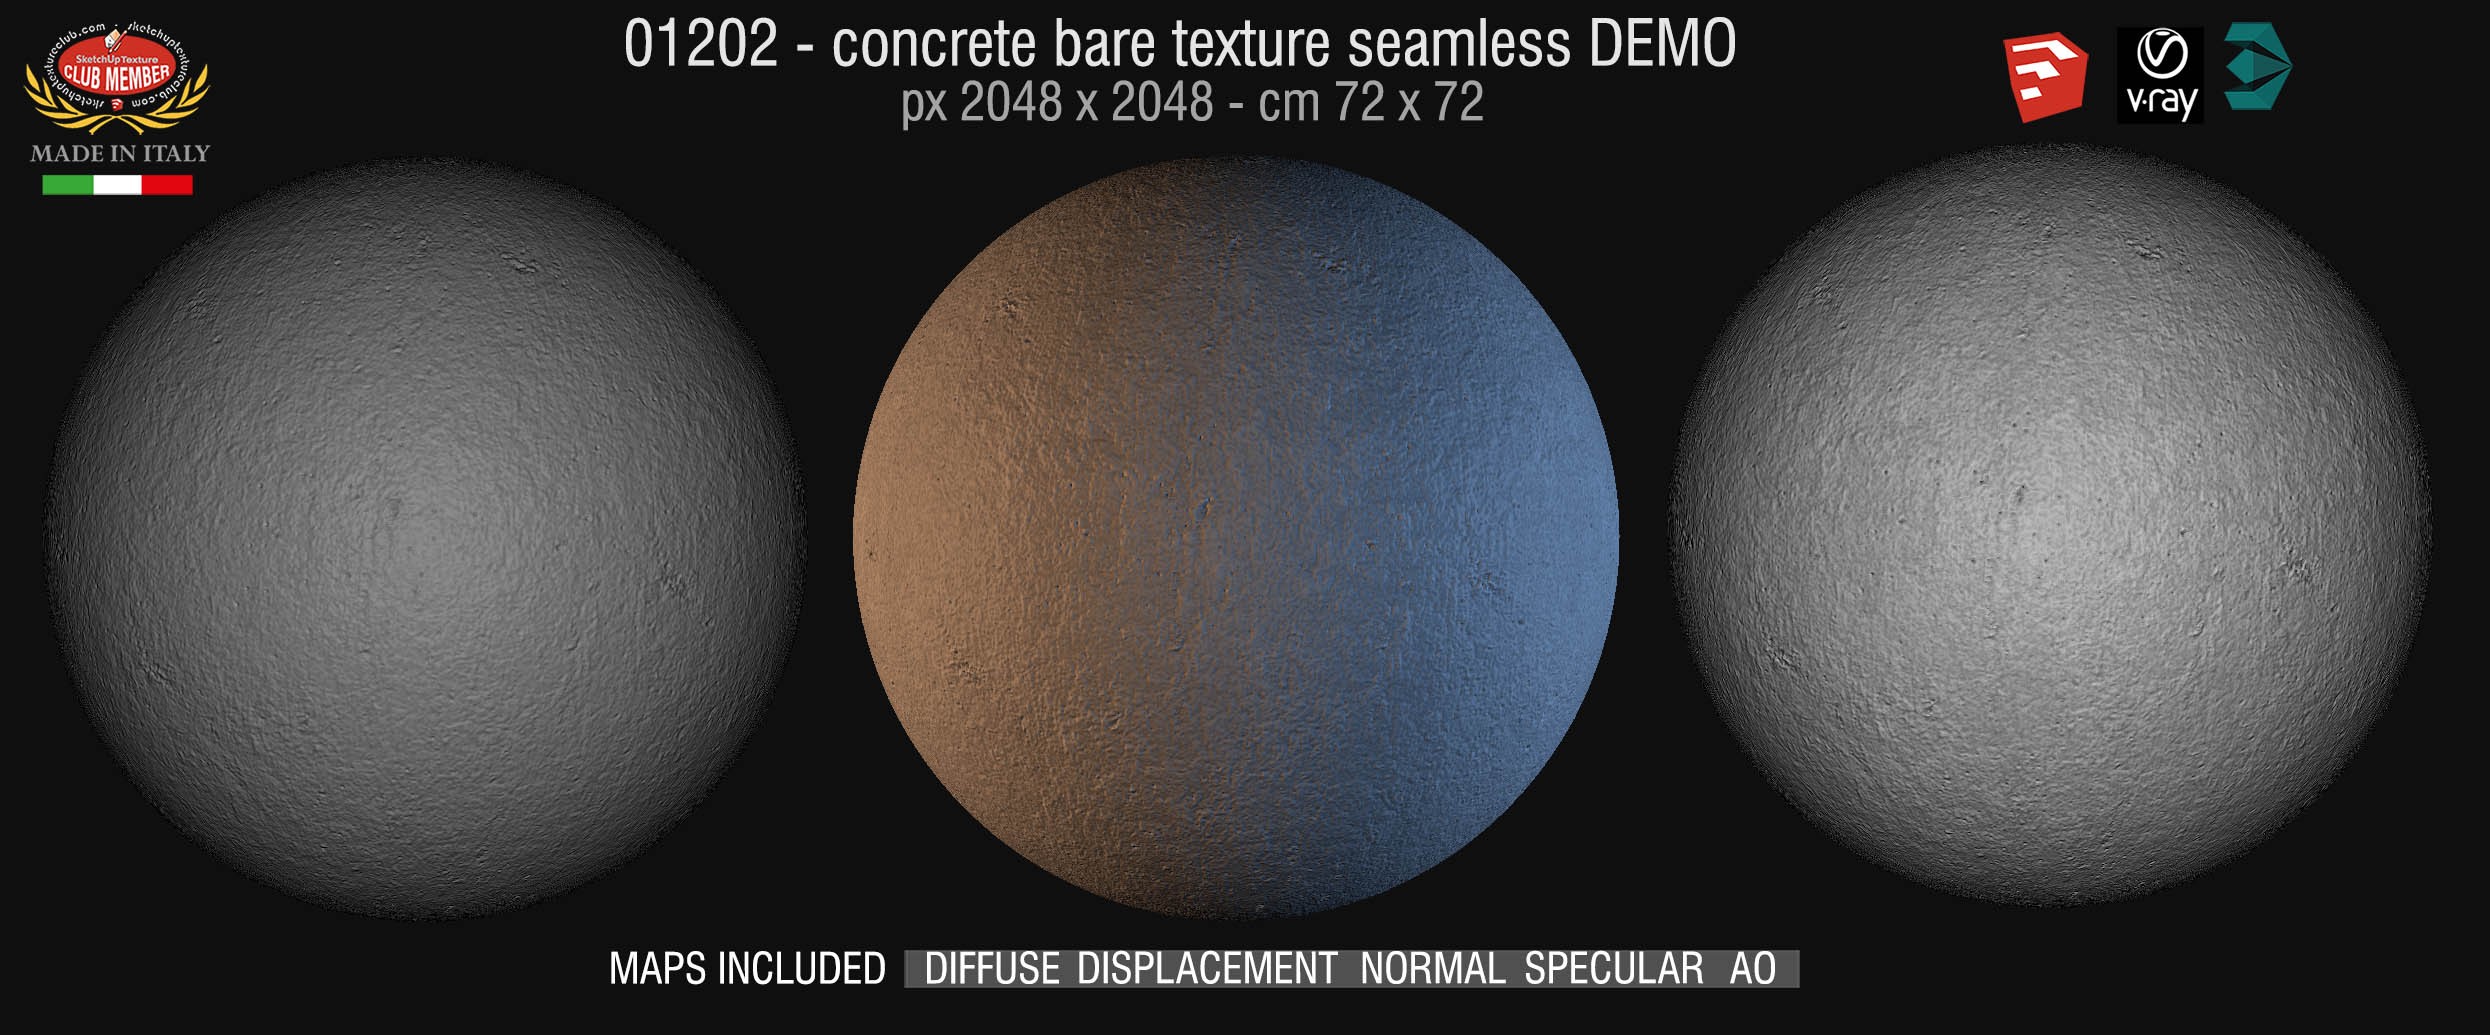 01202 HR Concrete bare texture + maps DEMO